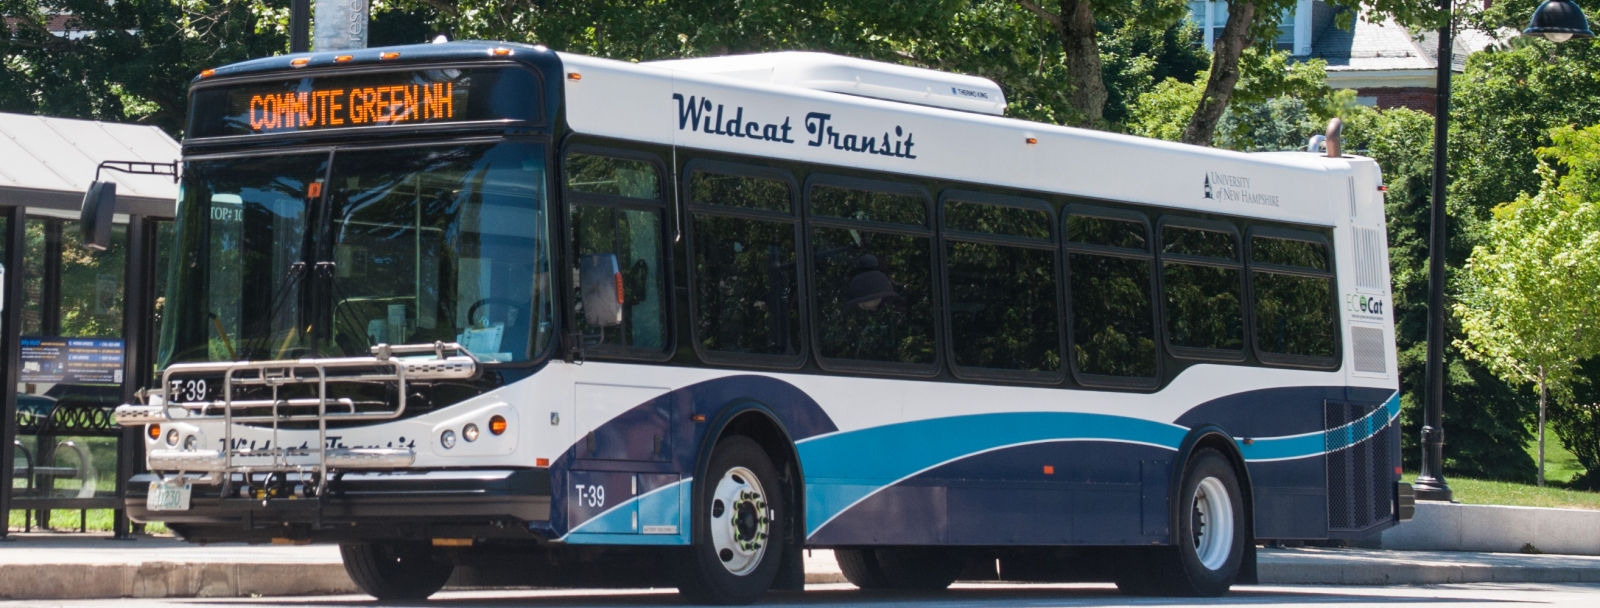 WildCat Bus transit